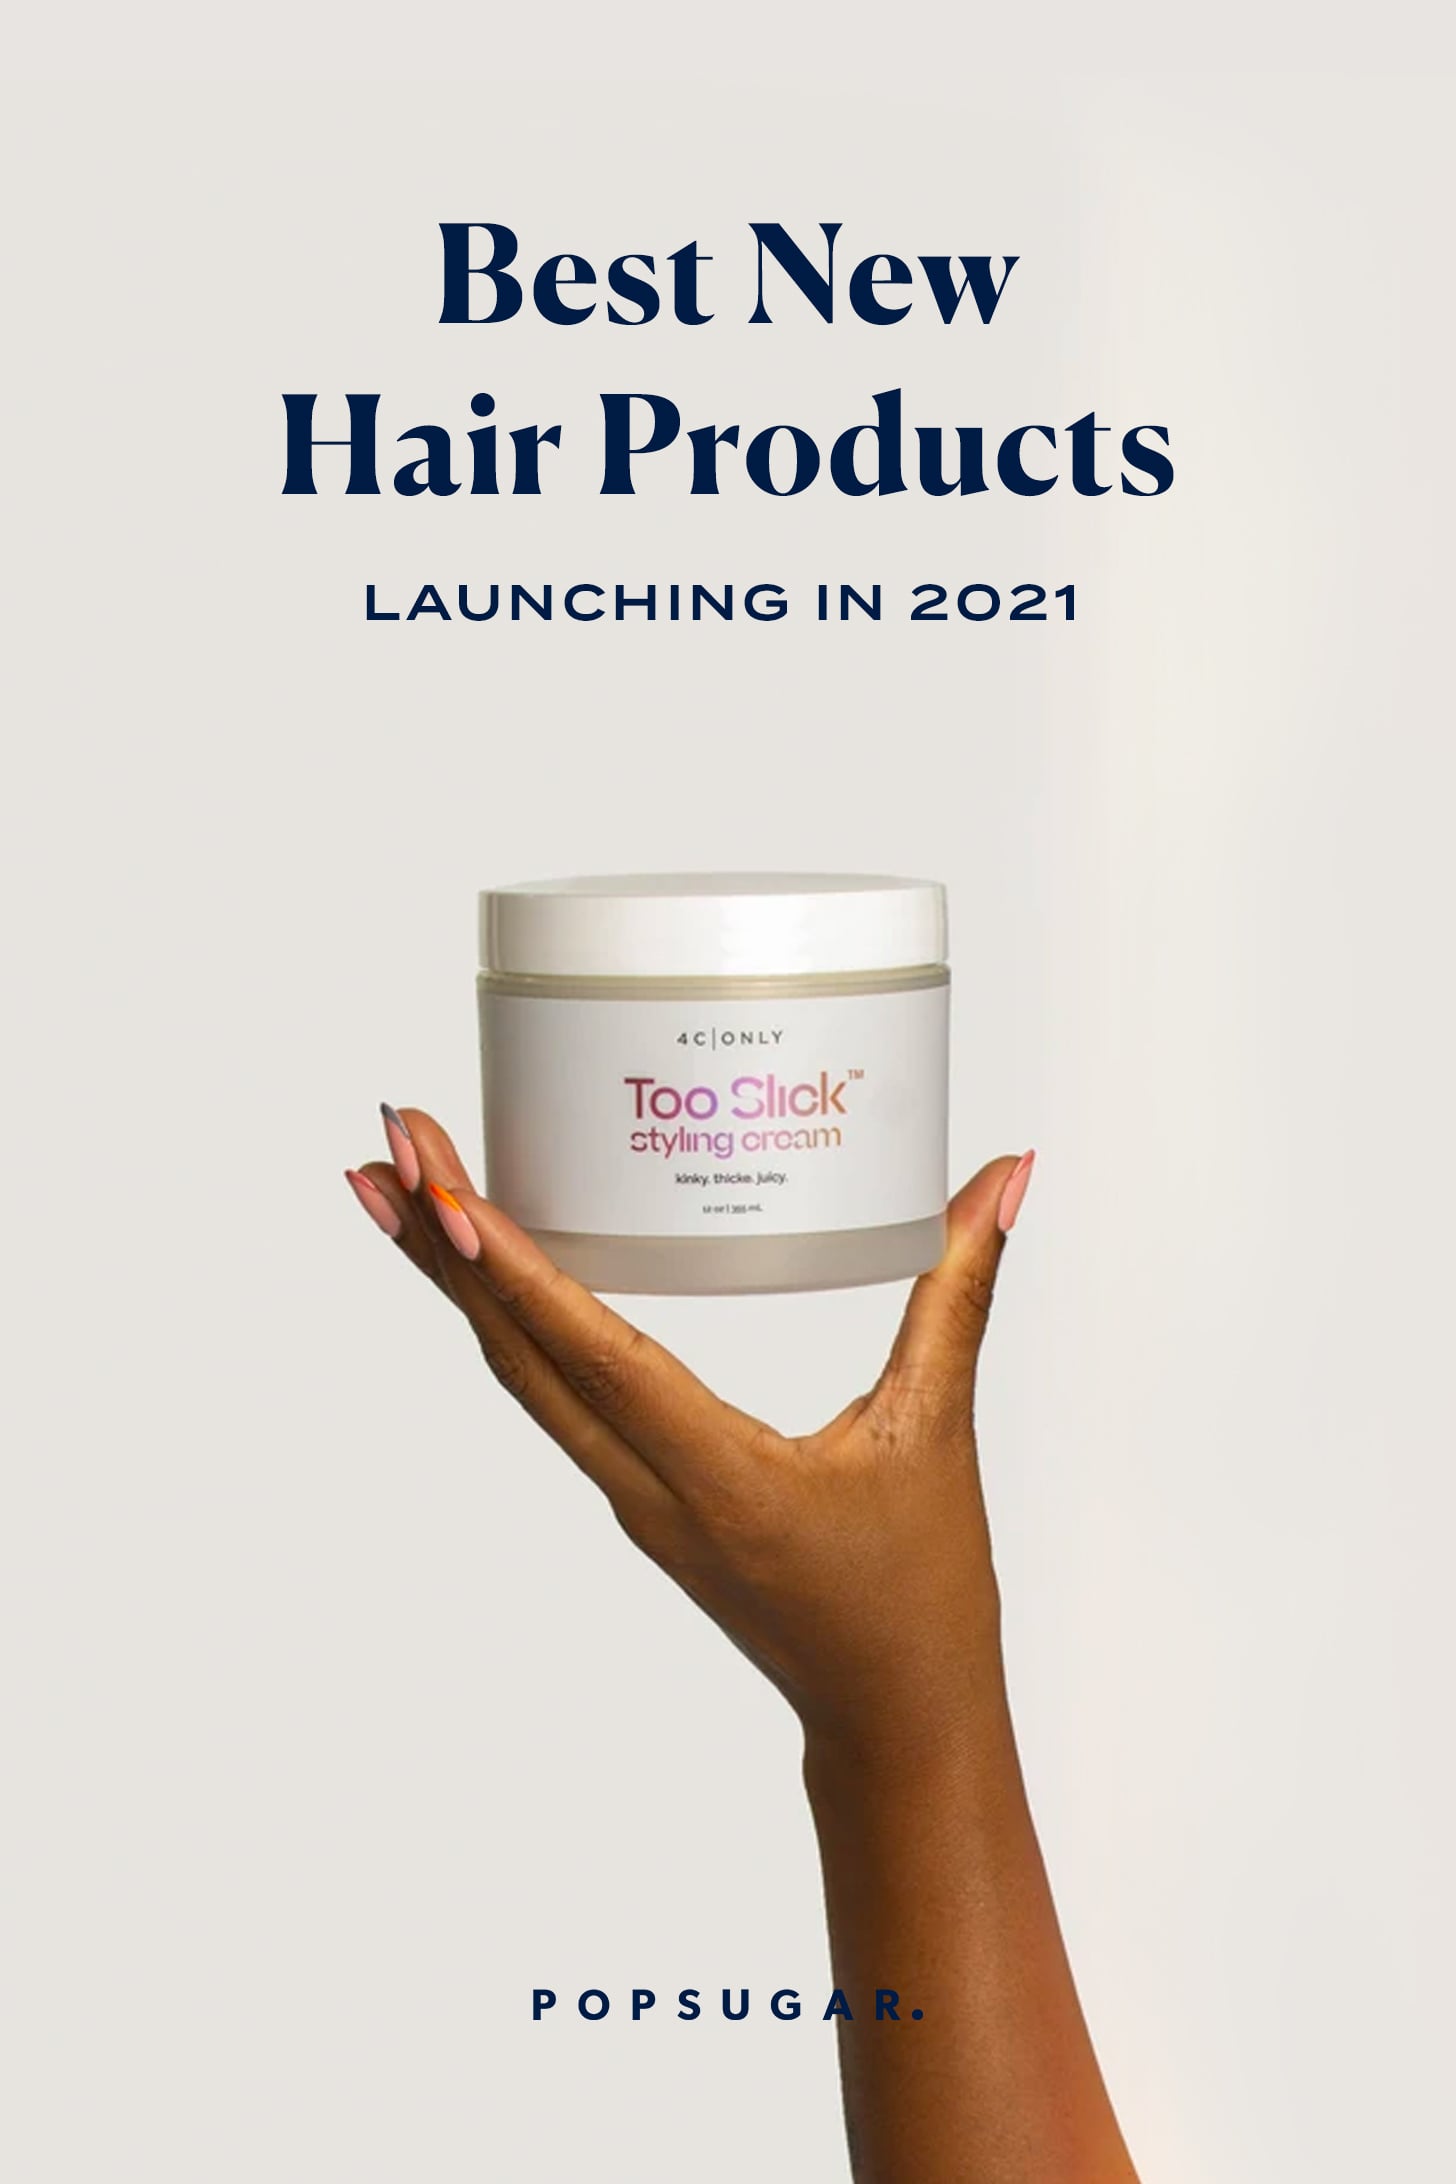 nejlepší nové vlasové produkty uvedení na trh v 2021